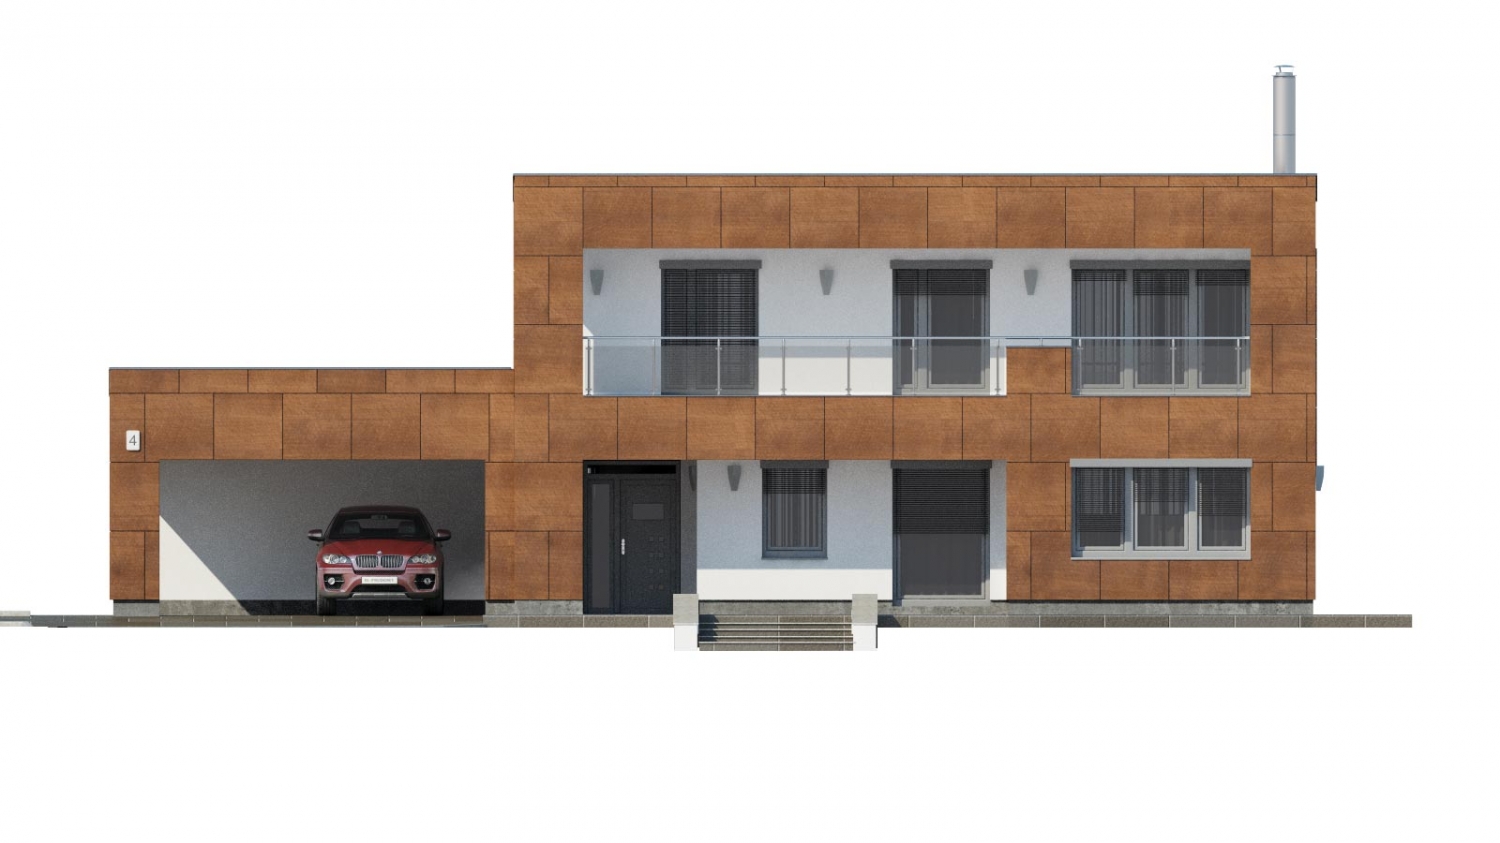 Pohľad 1. - Moderní poschoďový dům s plochou střechou a přístřeškem pro auta. Vhodný na úzký pozemek. Je možnost realizovat bez přístřešku, případně přístřešek upravit na garáž.